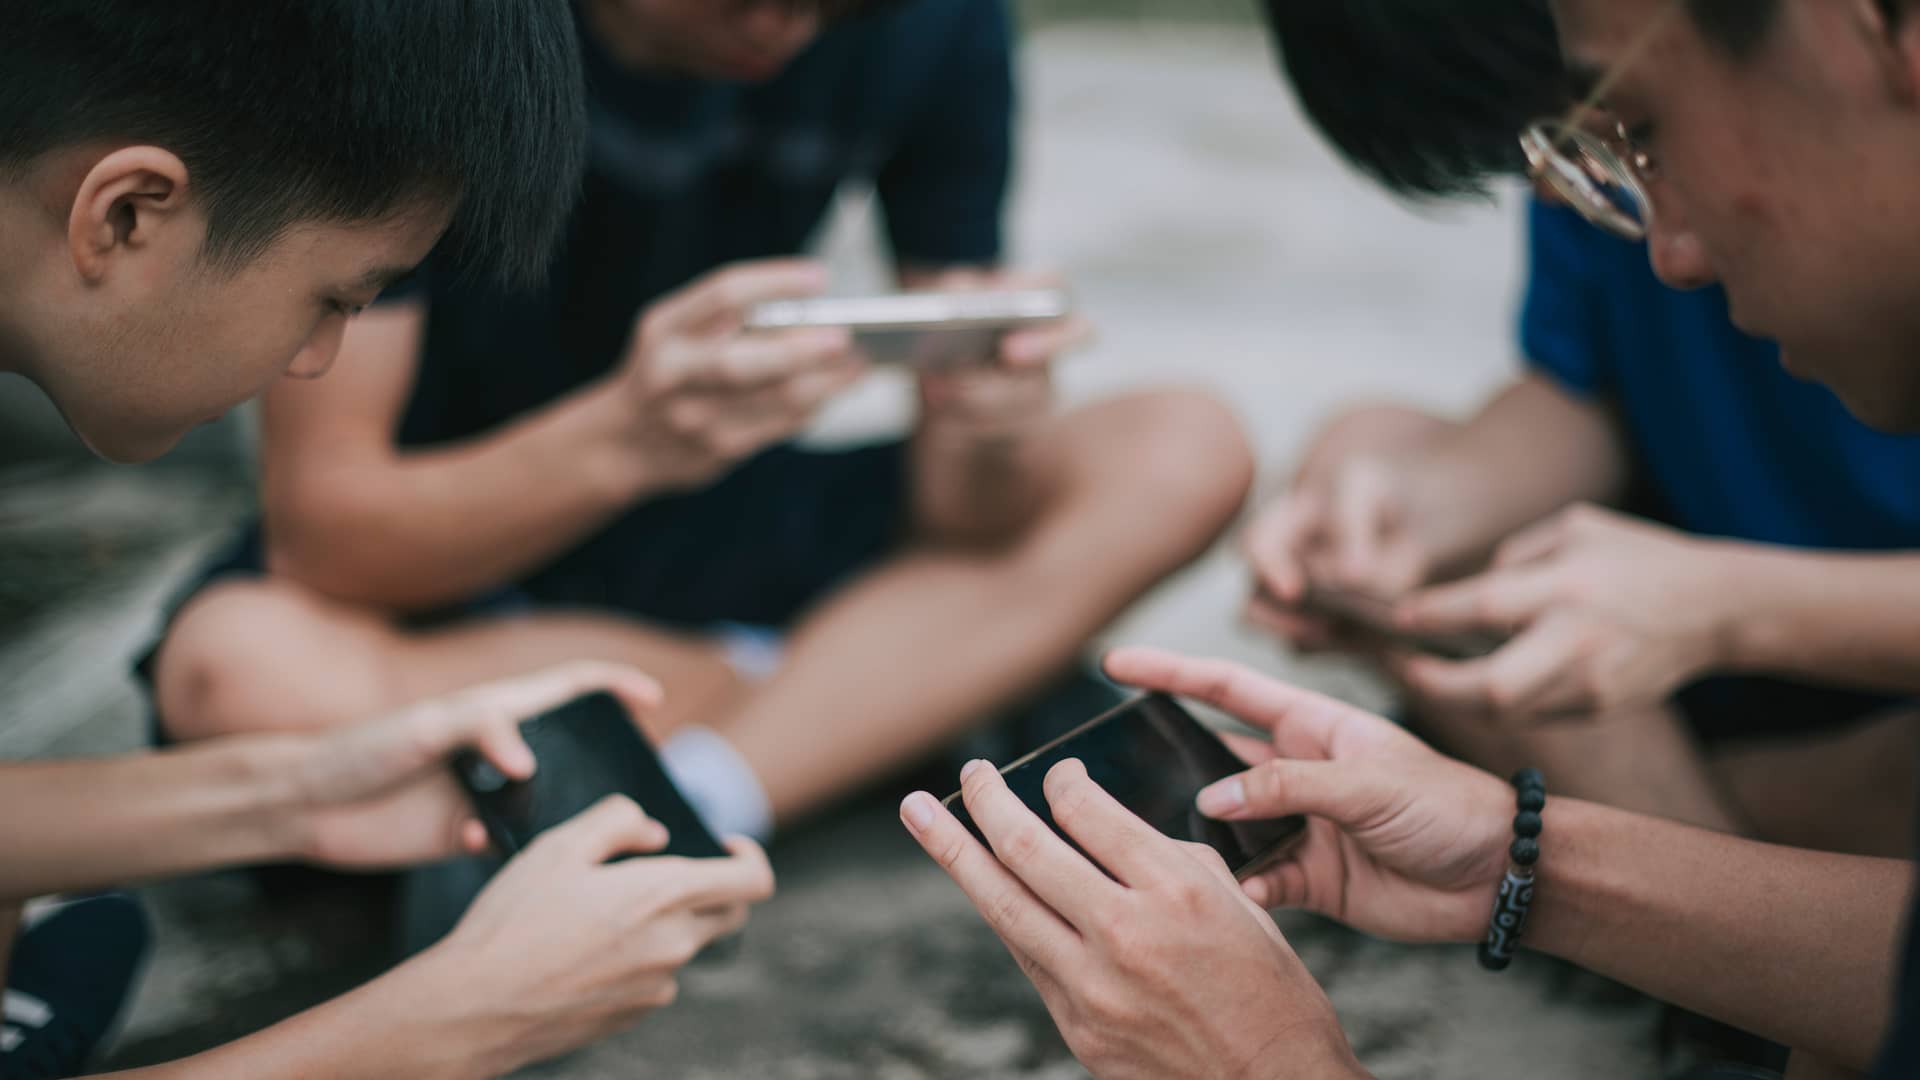 Jovenes jugando con los teléfonos móviles usando la tarifa solo datos